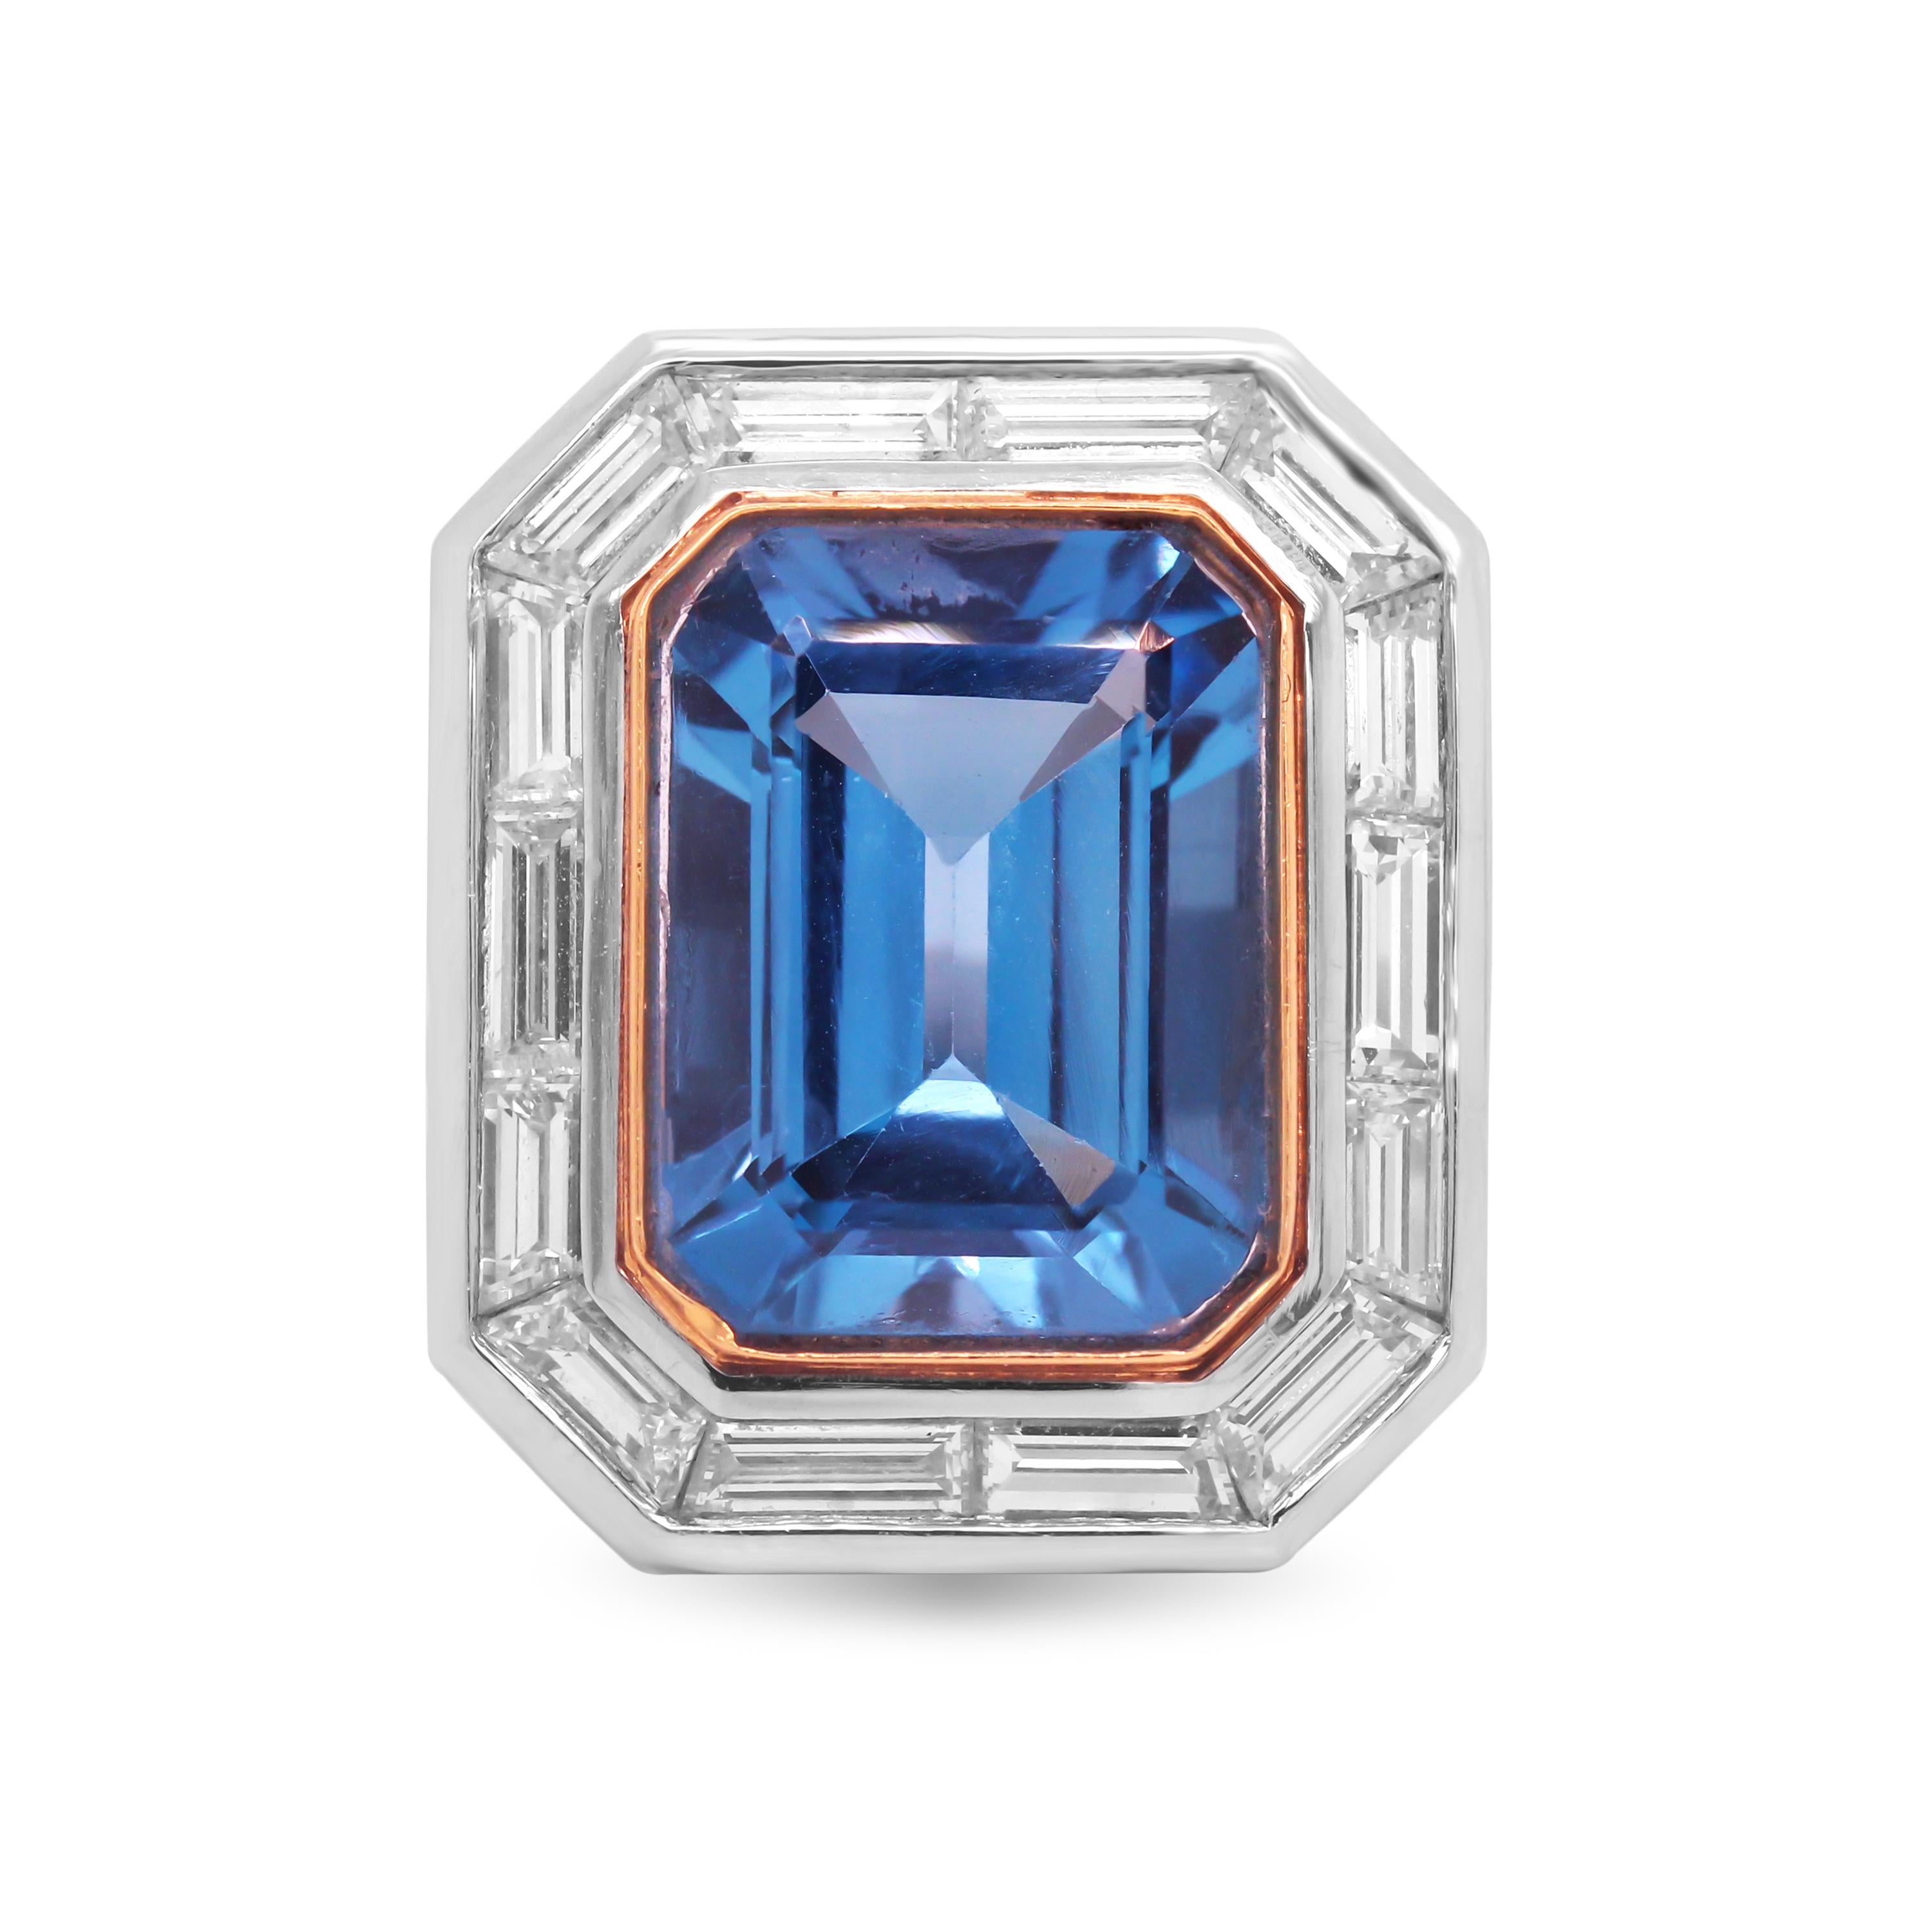 Bague en platine et diamant taille baguette avec topaze bleue au centre

Cette bague présente un centre en topaze bleue impeccable, de couleur très vive, entouré de 10 carats et de diamants.

L'anneau est fabriqué en platine avec de l'or 18K